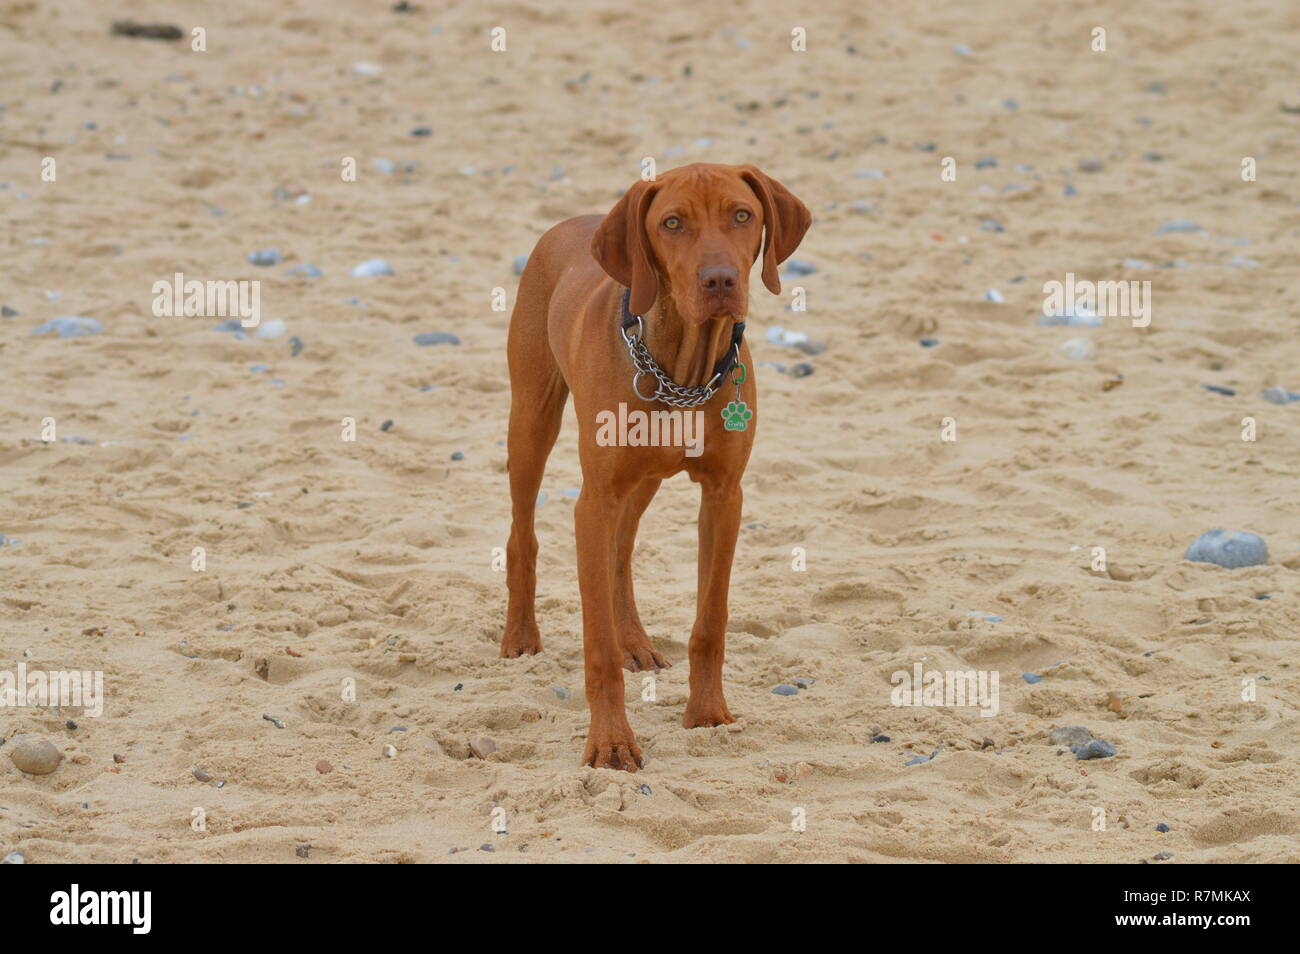 Vizsla dog on sandy beach Stock Photo